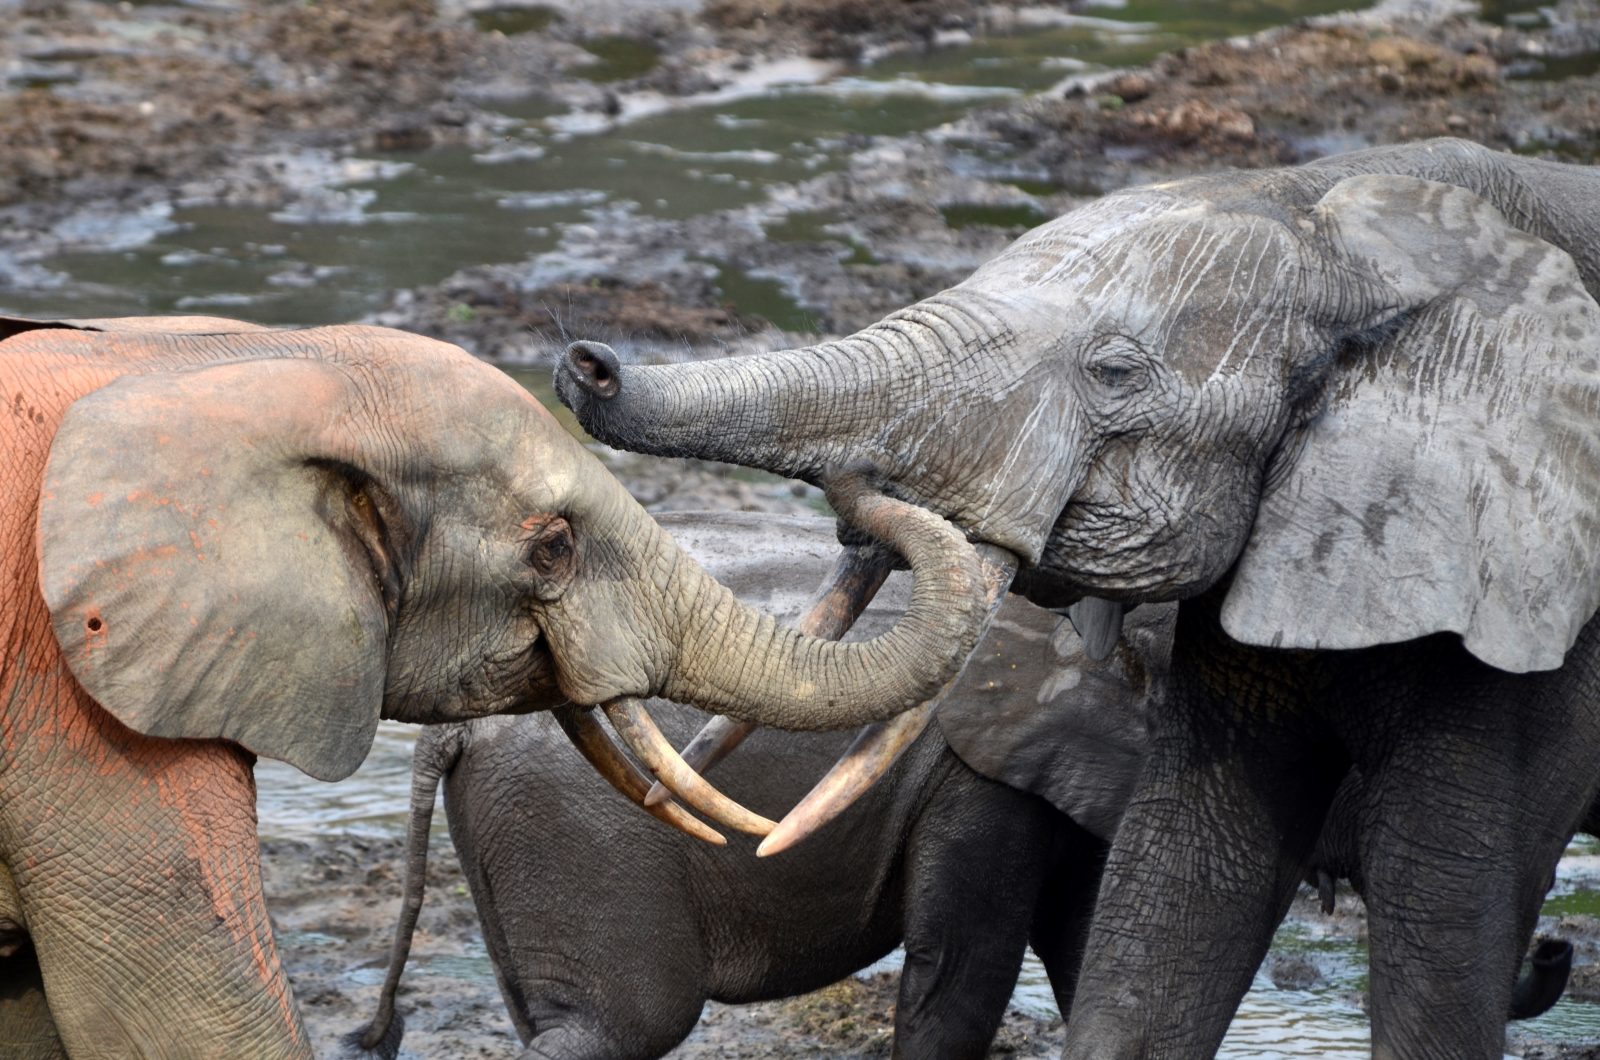 Заглавное фото: самки лесных слонов в парке Dzanga Bai. Фото Андреа Туркало/Elephant Listening Project